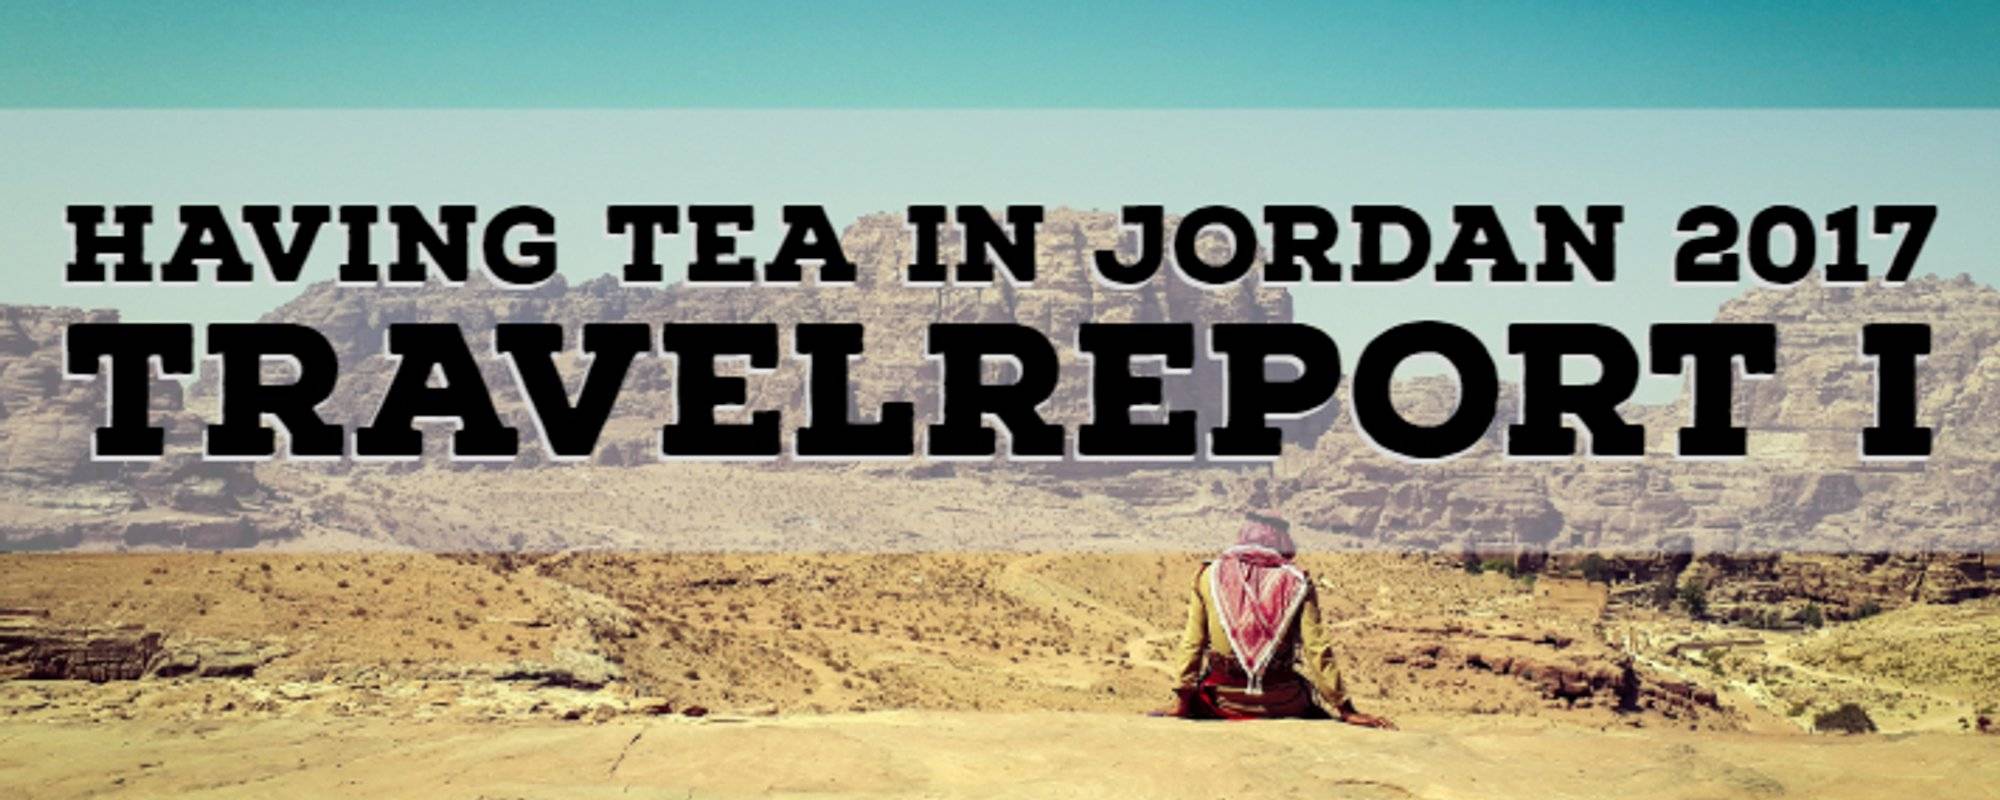 Having tea in Jordan - Travelreport (T.r.I)